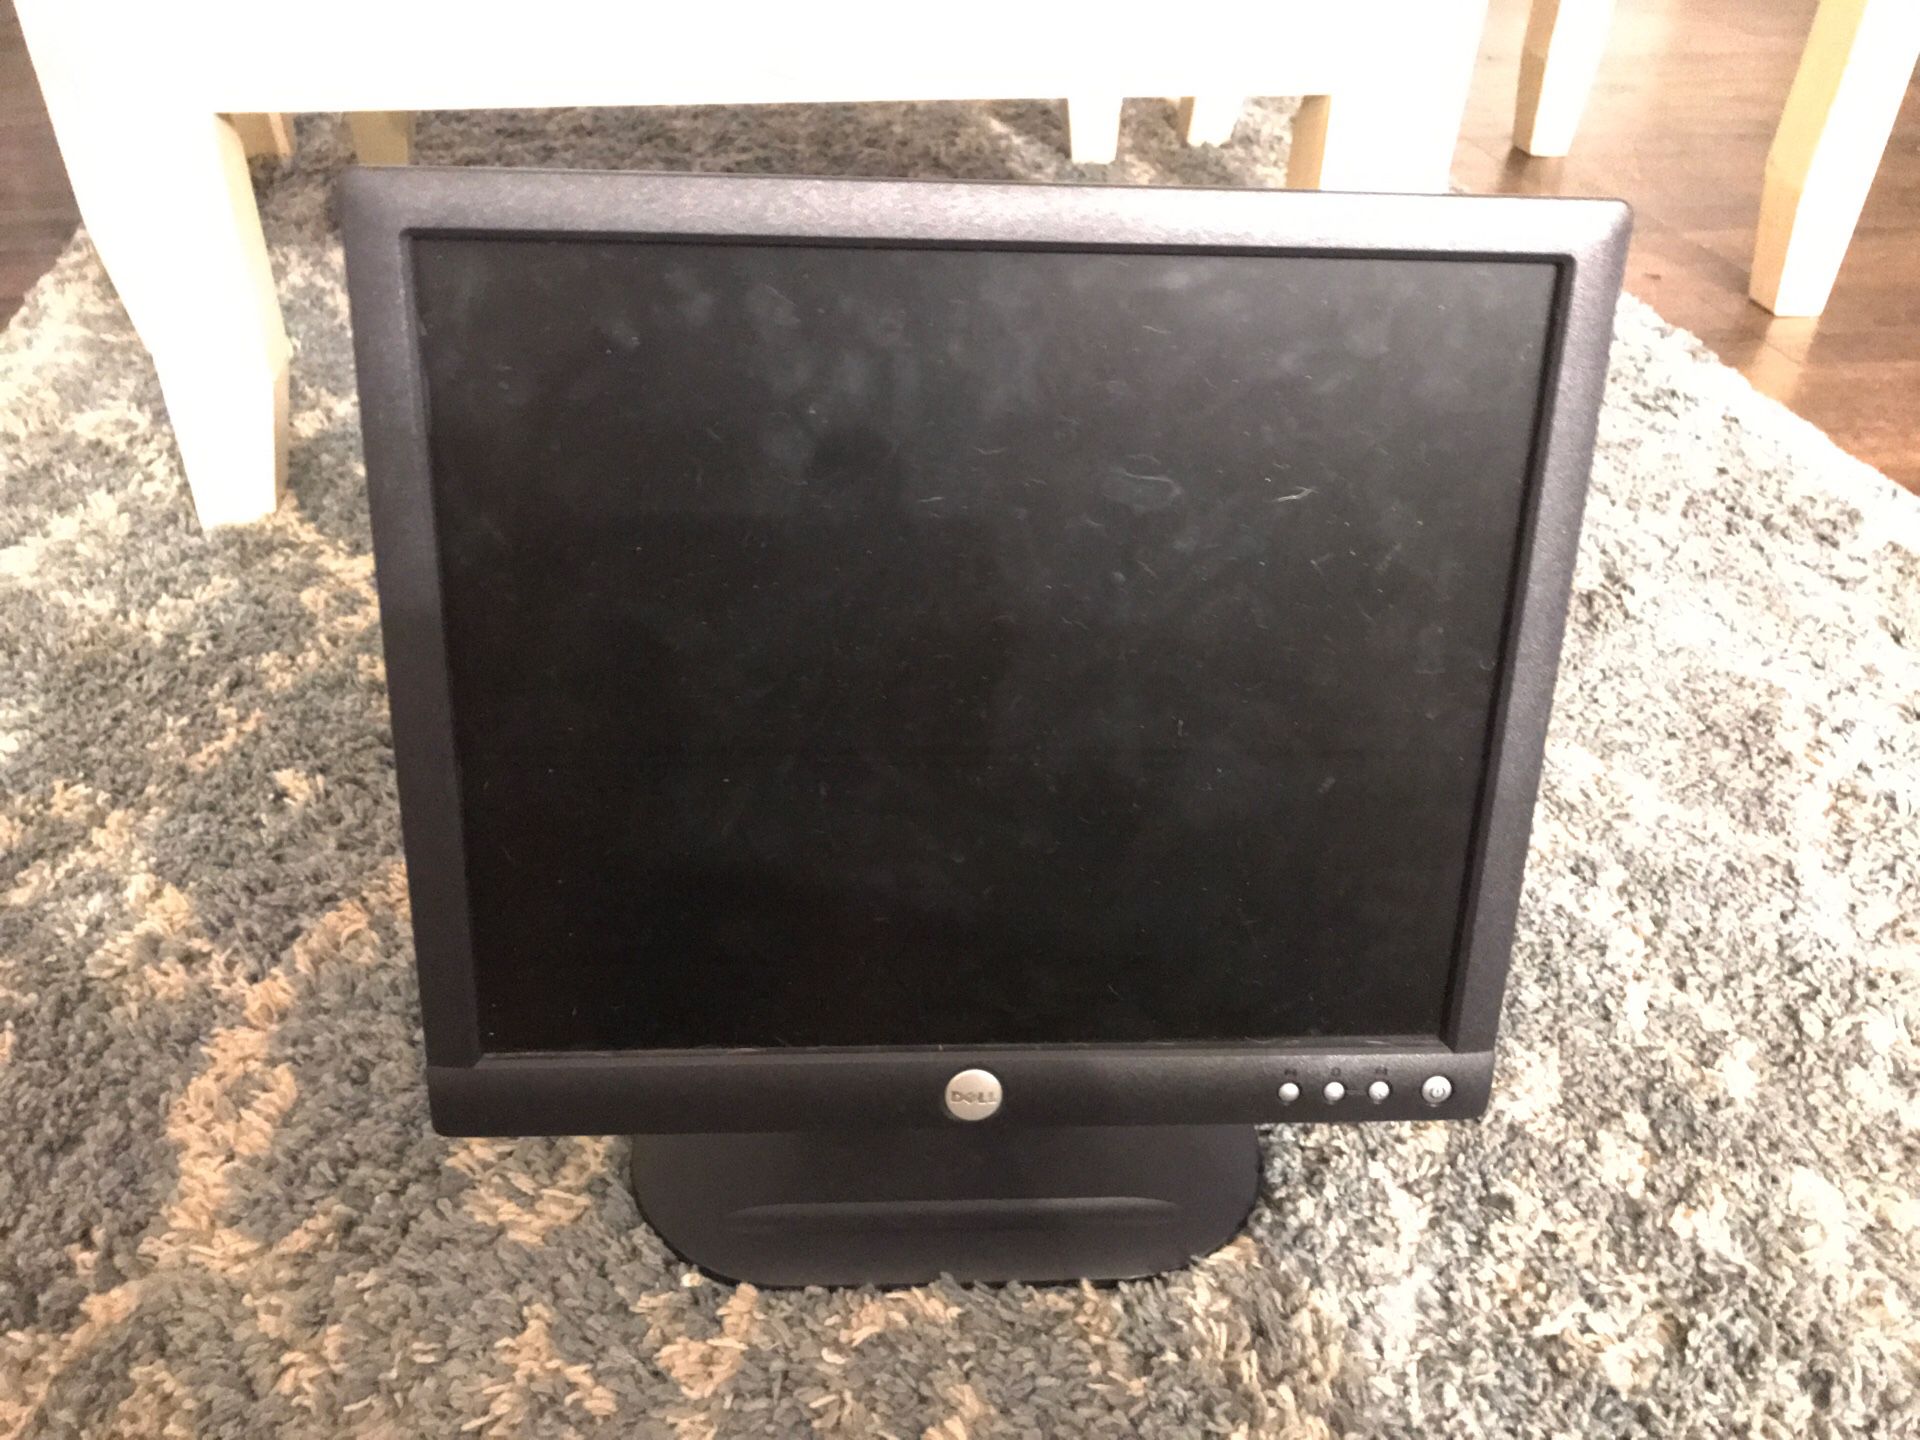 Dell Computer monitor